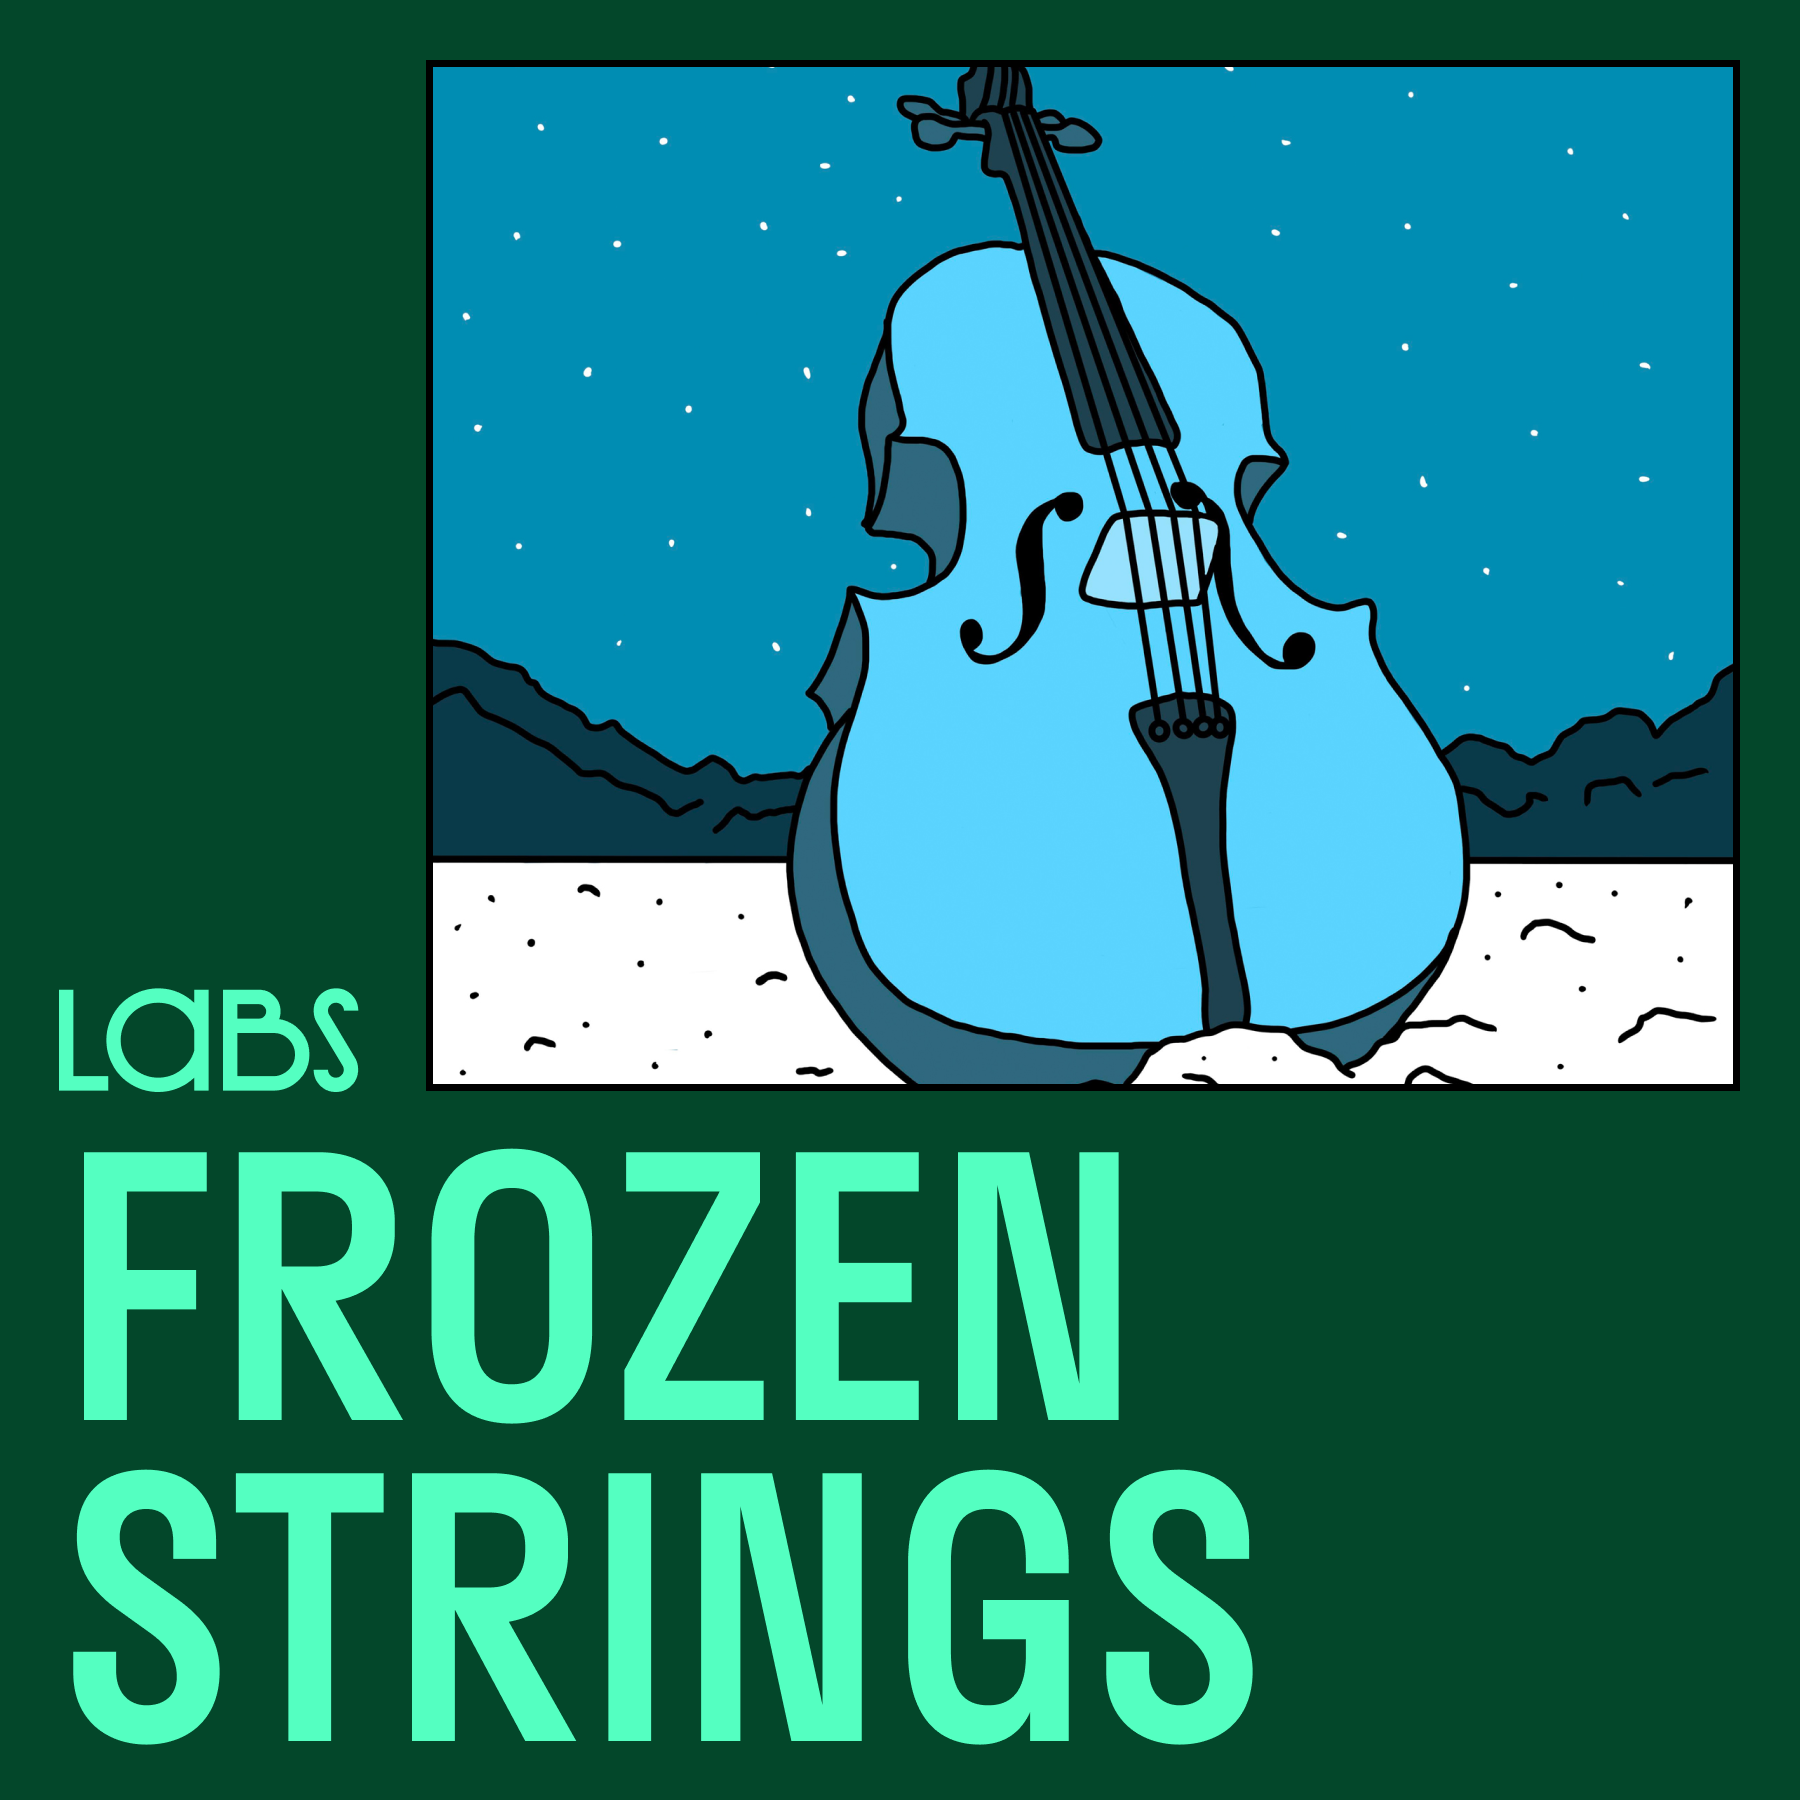 LABS Frozen Strings